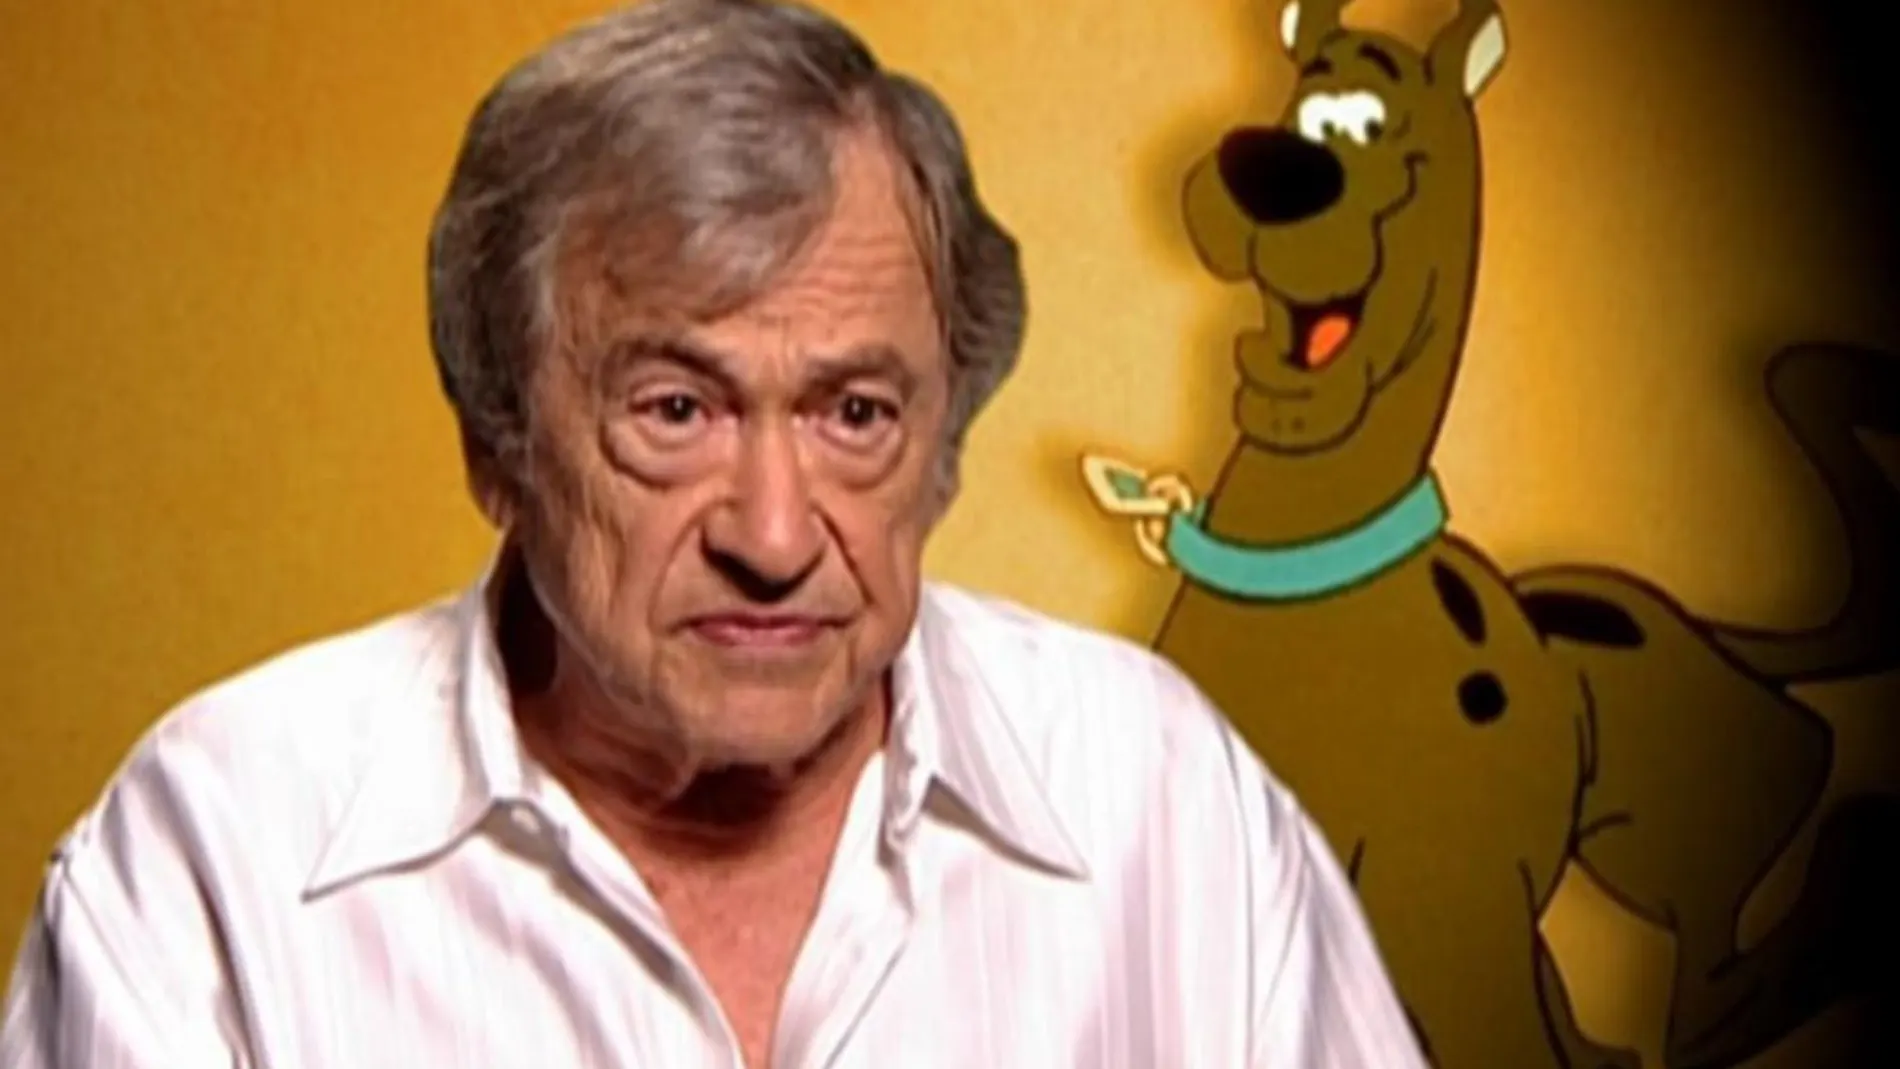 El creador de “Scooby Doo” falleció este jueves en California